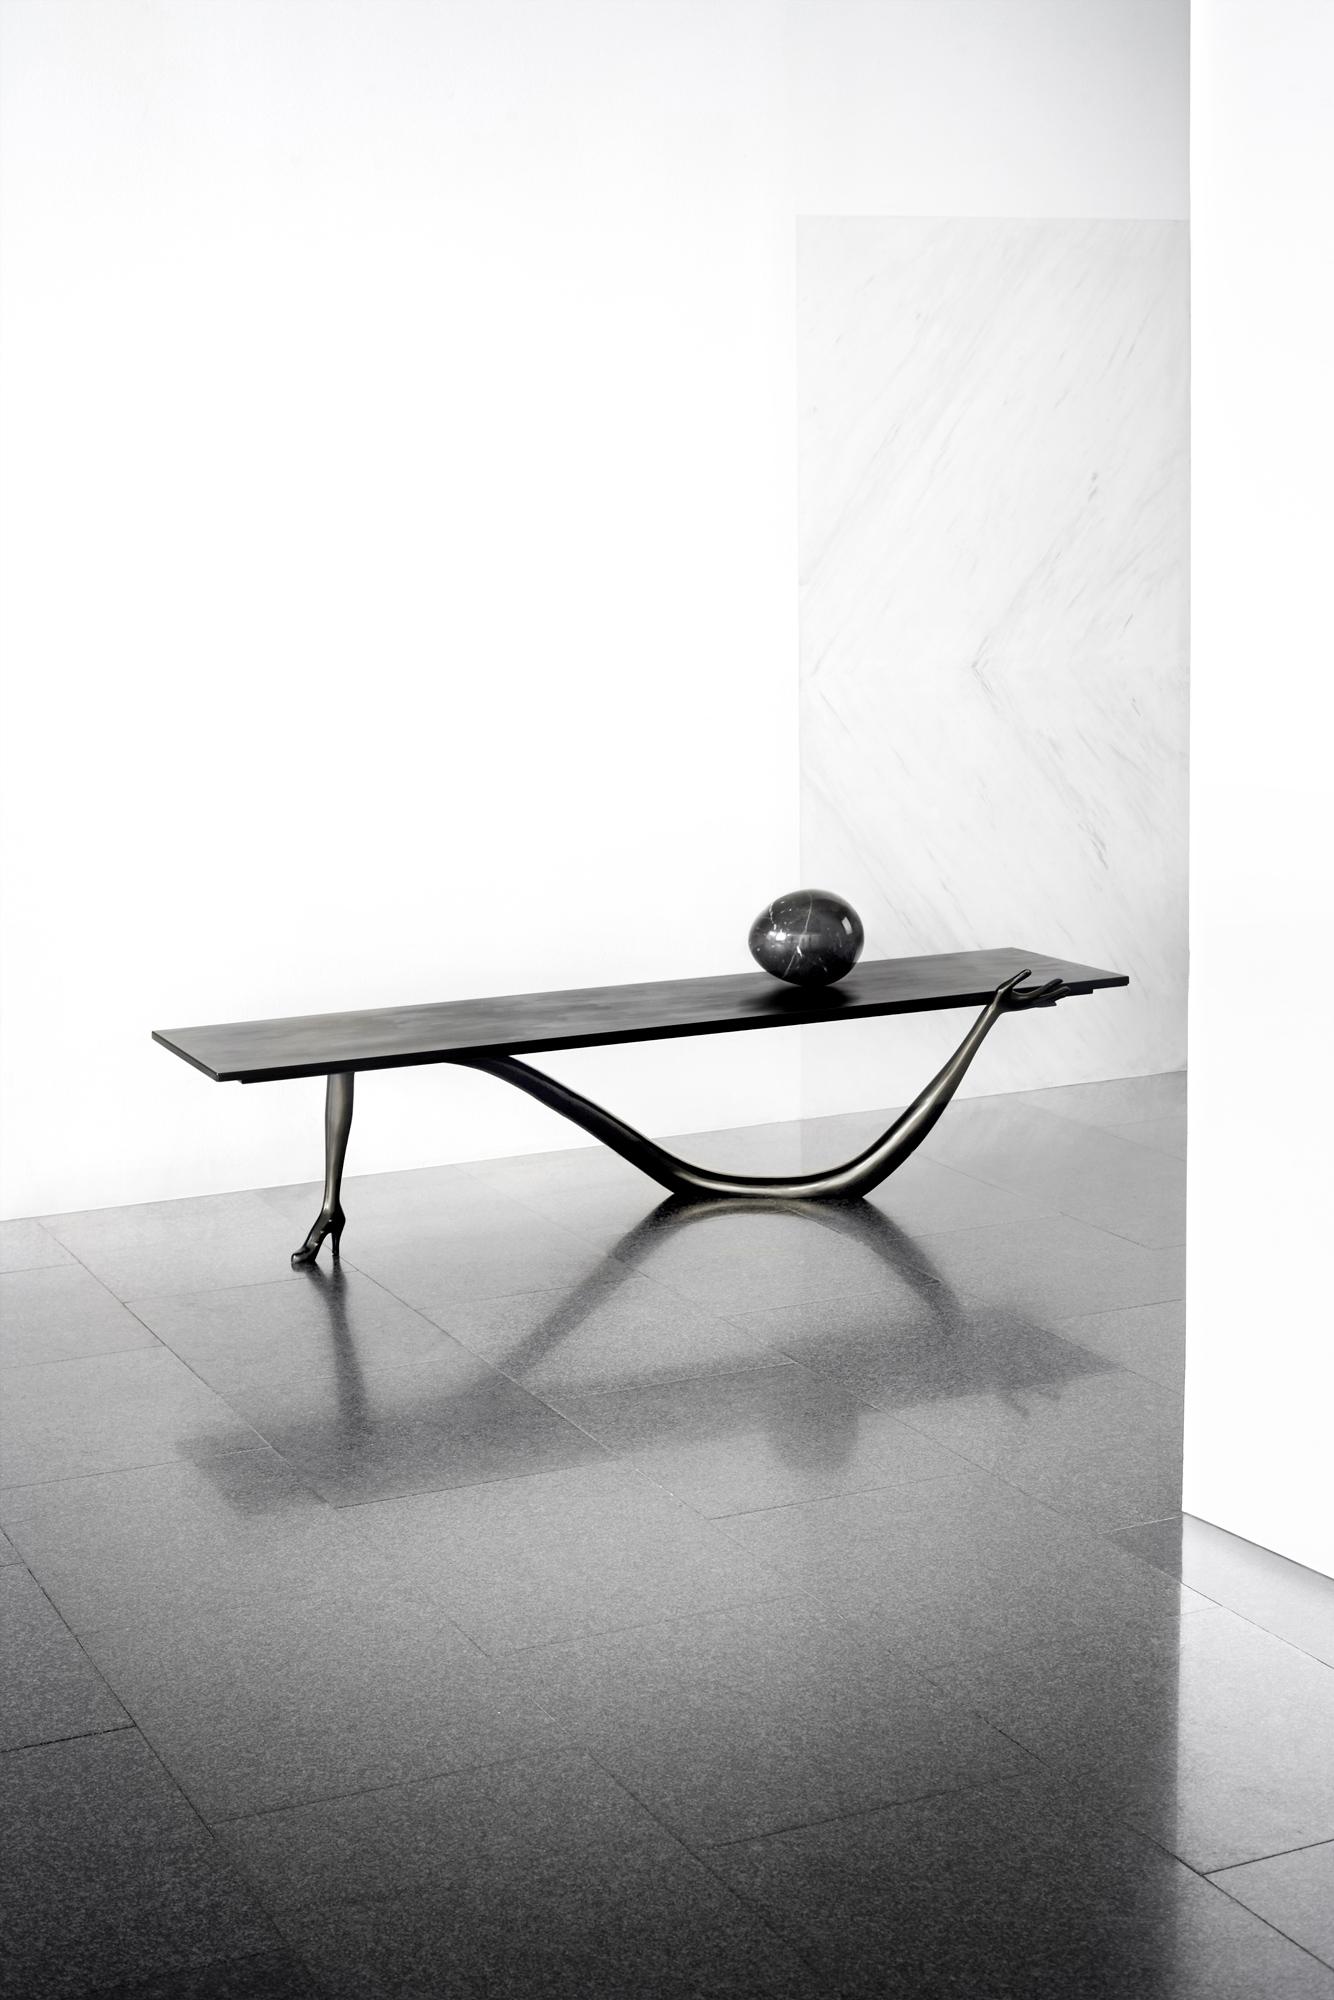 Élevez votre espace avec la rare et exquise table basse Leda de Salvador Dali, un véritable chef-d'œuvre d'art et de design. Conçue par le maître surréaliste lui-même et fabriquée par BD, cette pièce Black Label en édition limitée ne manquera pas